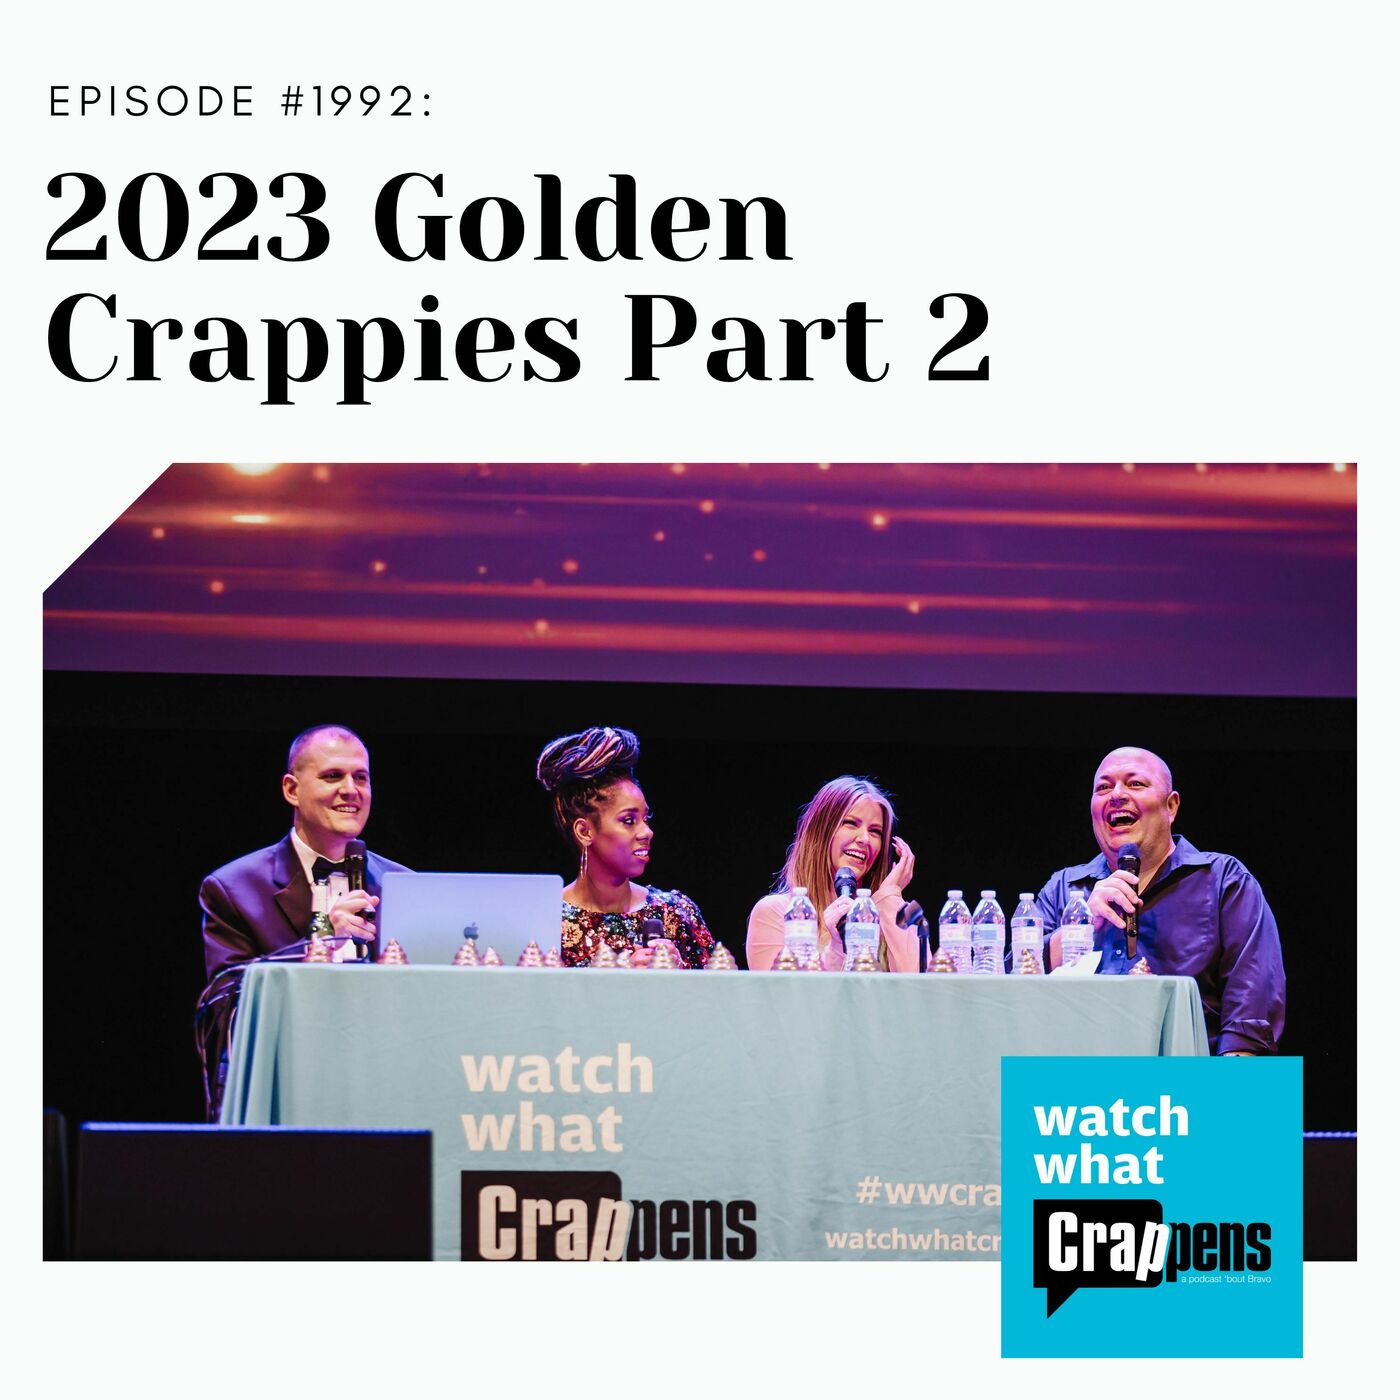 2023 Golden Crappies, Part 2